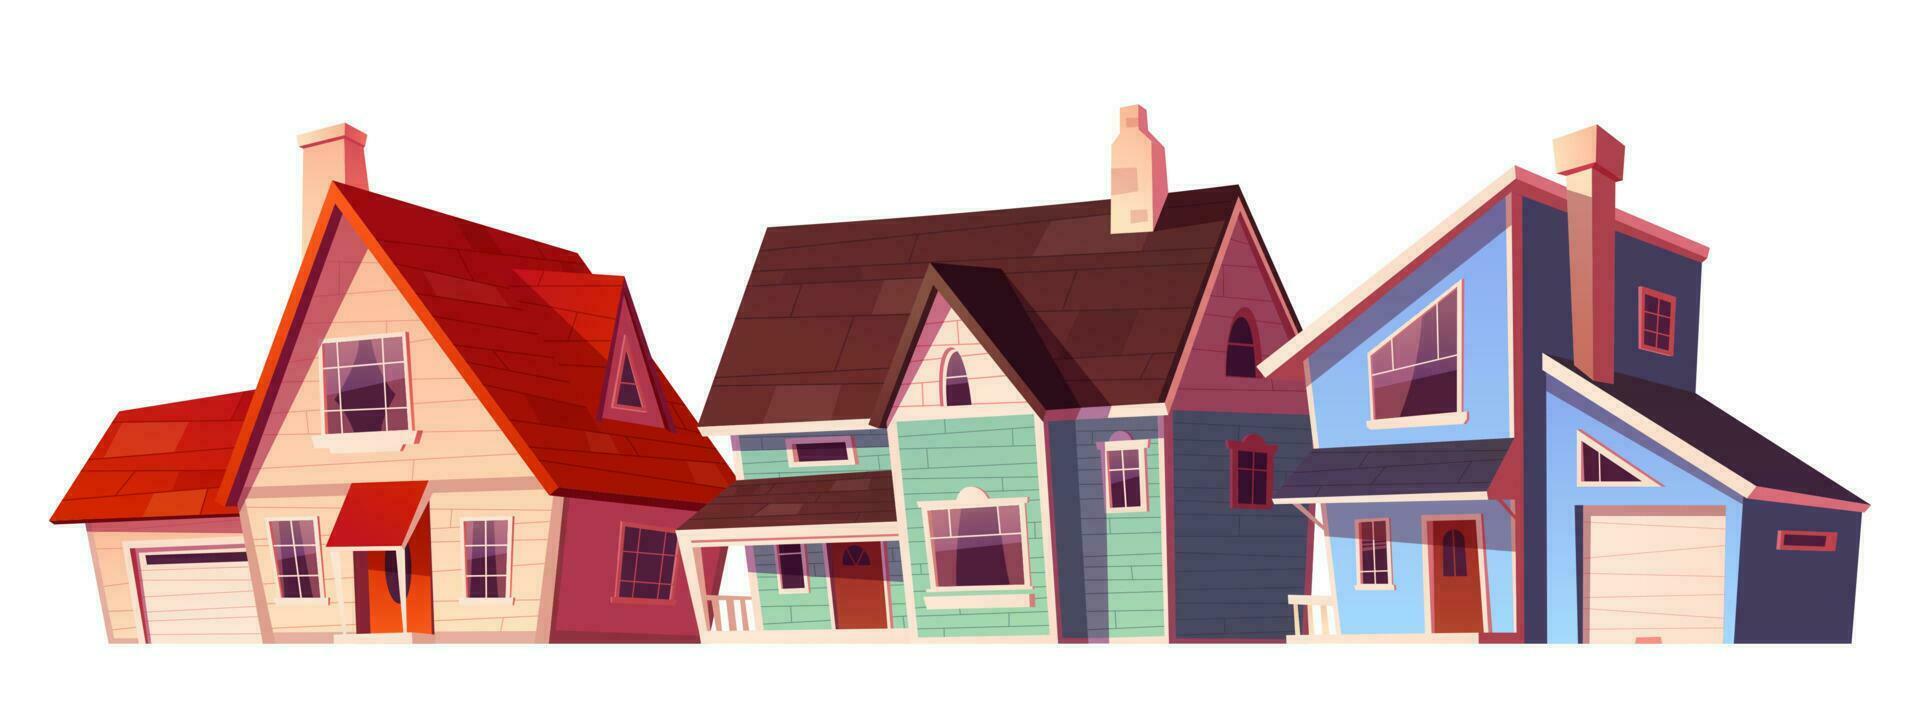 Suburban house building exterior village icon vector